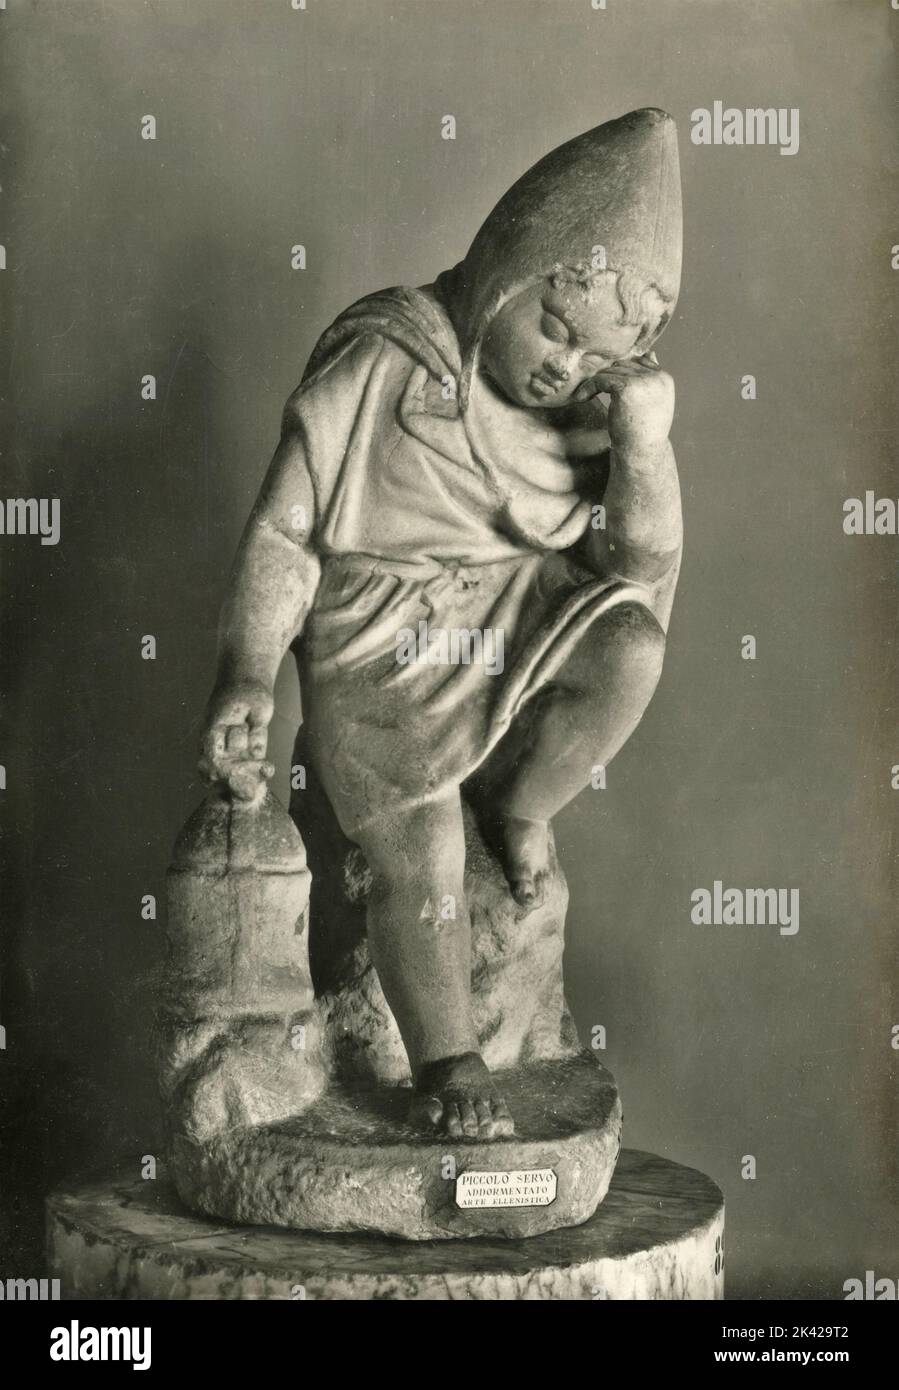 Antica statua romana: Piccolo servo con lanterna si addormentò mentre aspettava, Museo Romano, Roma, Italia 1930s Foto Stock